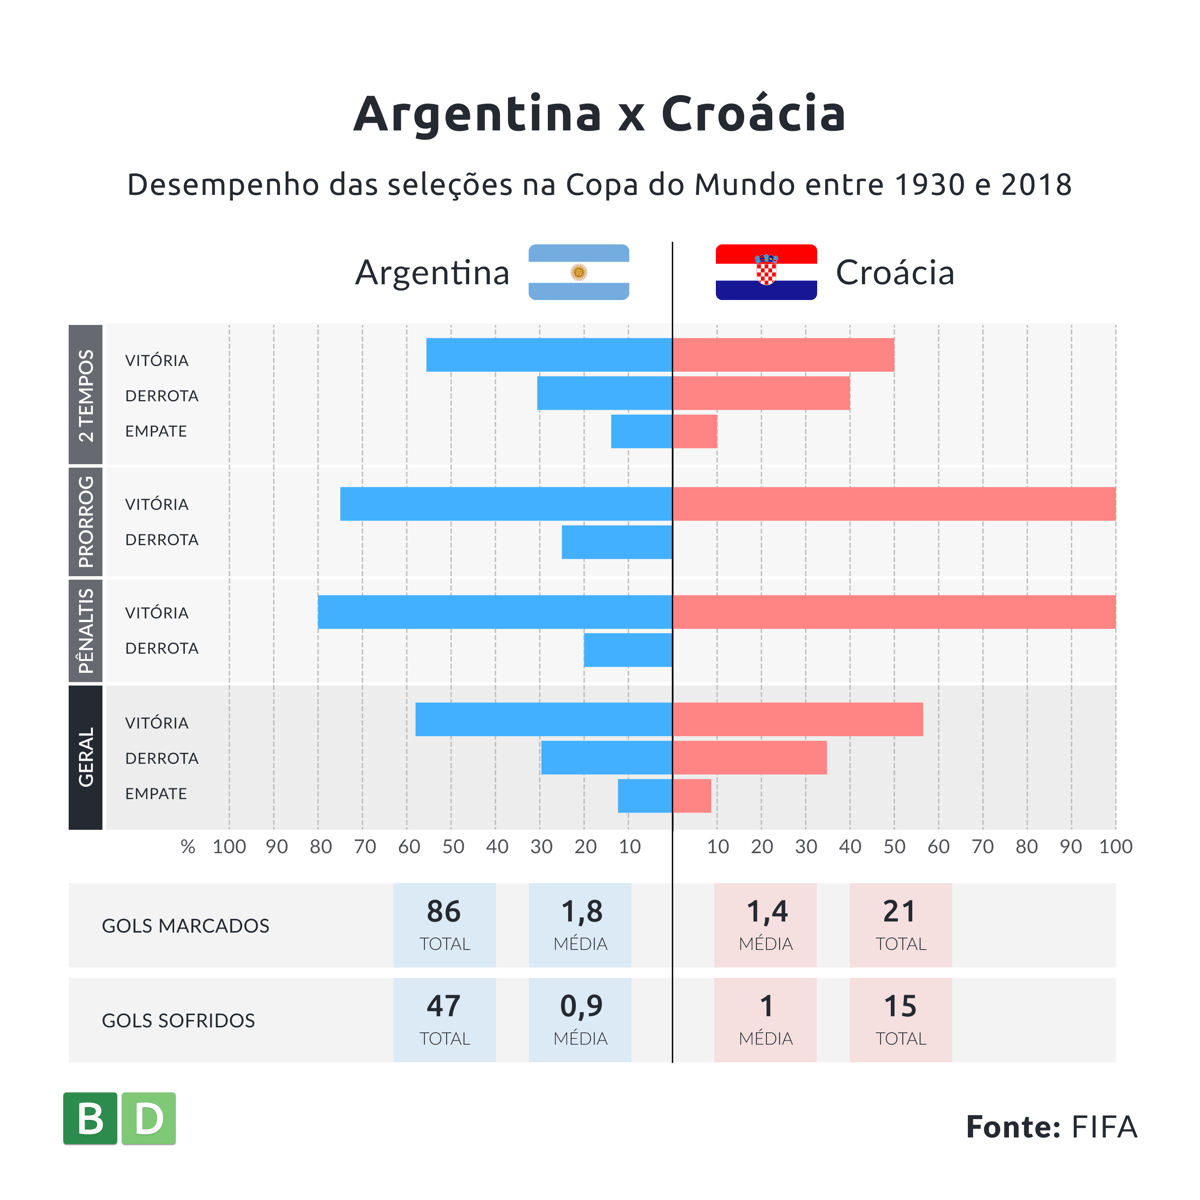 Desempenho das seleções da Argentina e da Croácia na Copa do Mundo entre 1930 e 2018